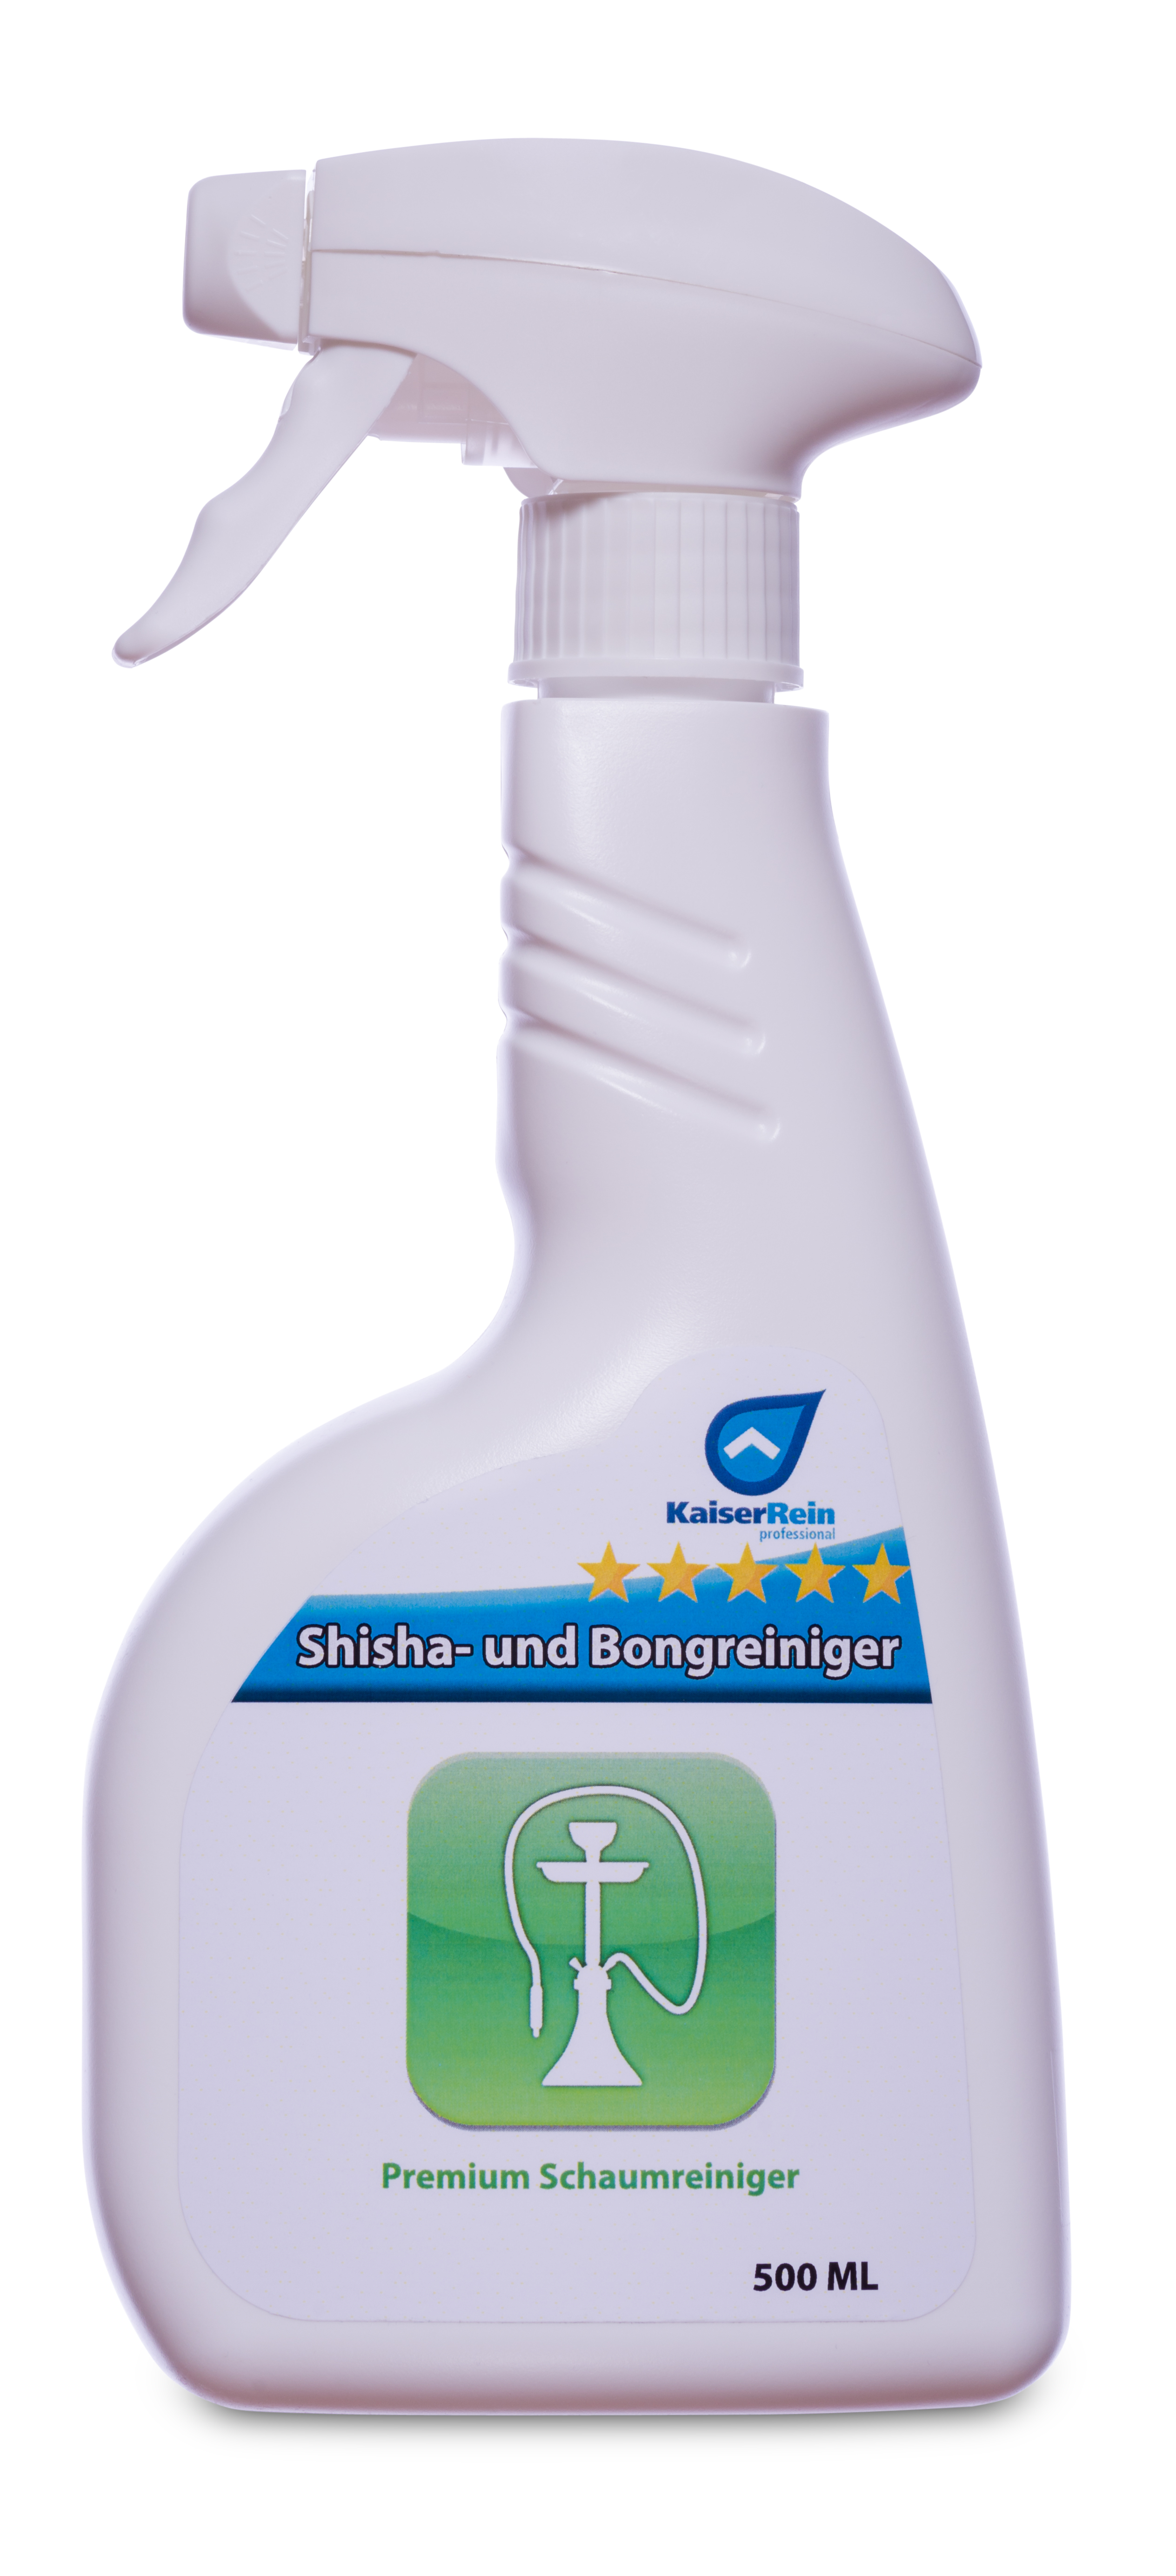 Shisha- und Bongreiniger Premium Schaumreiniger